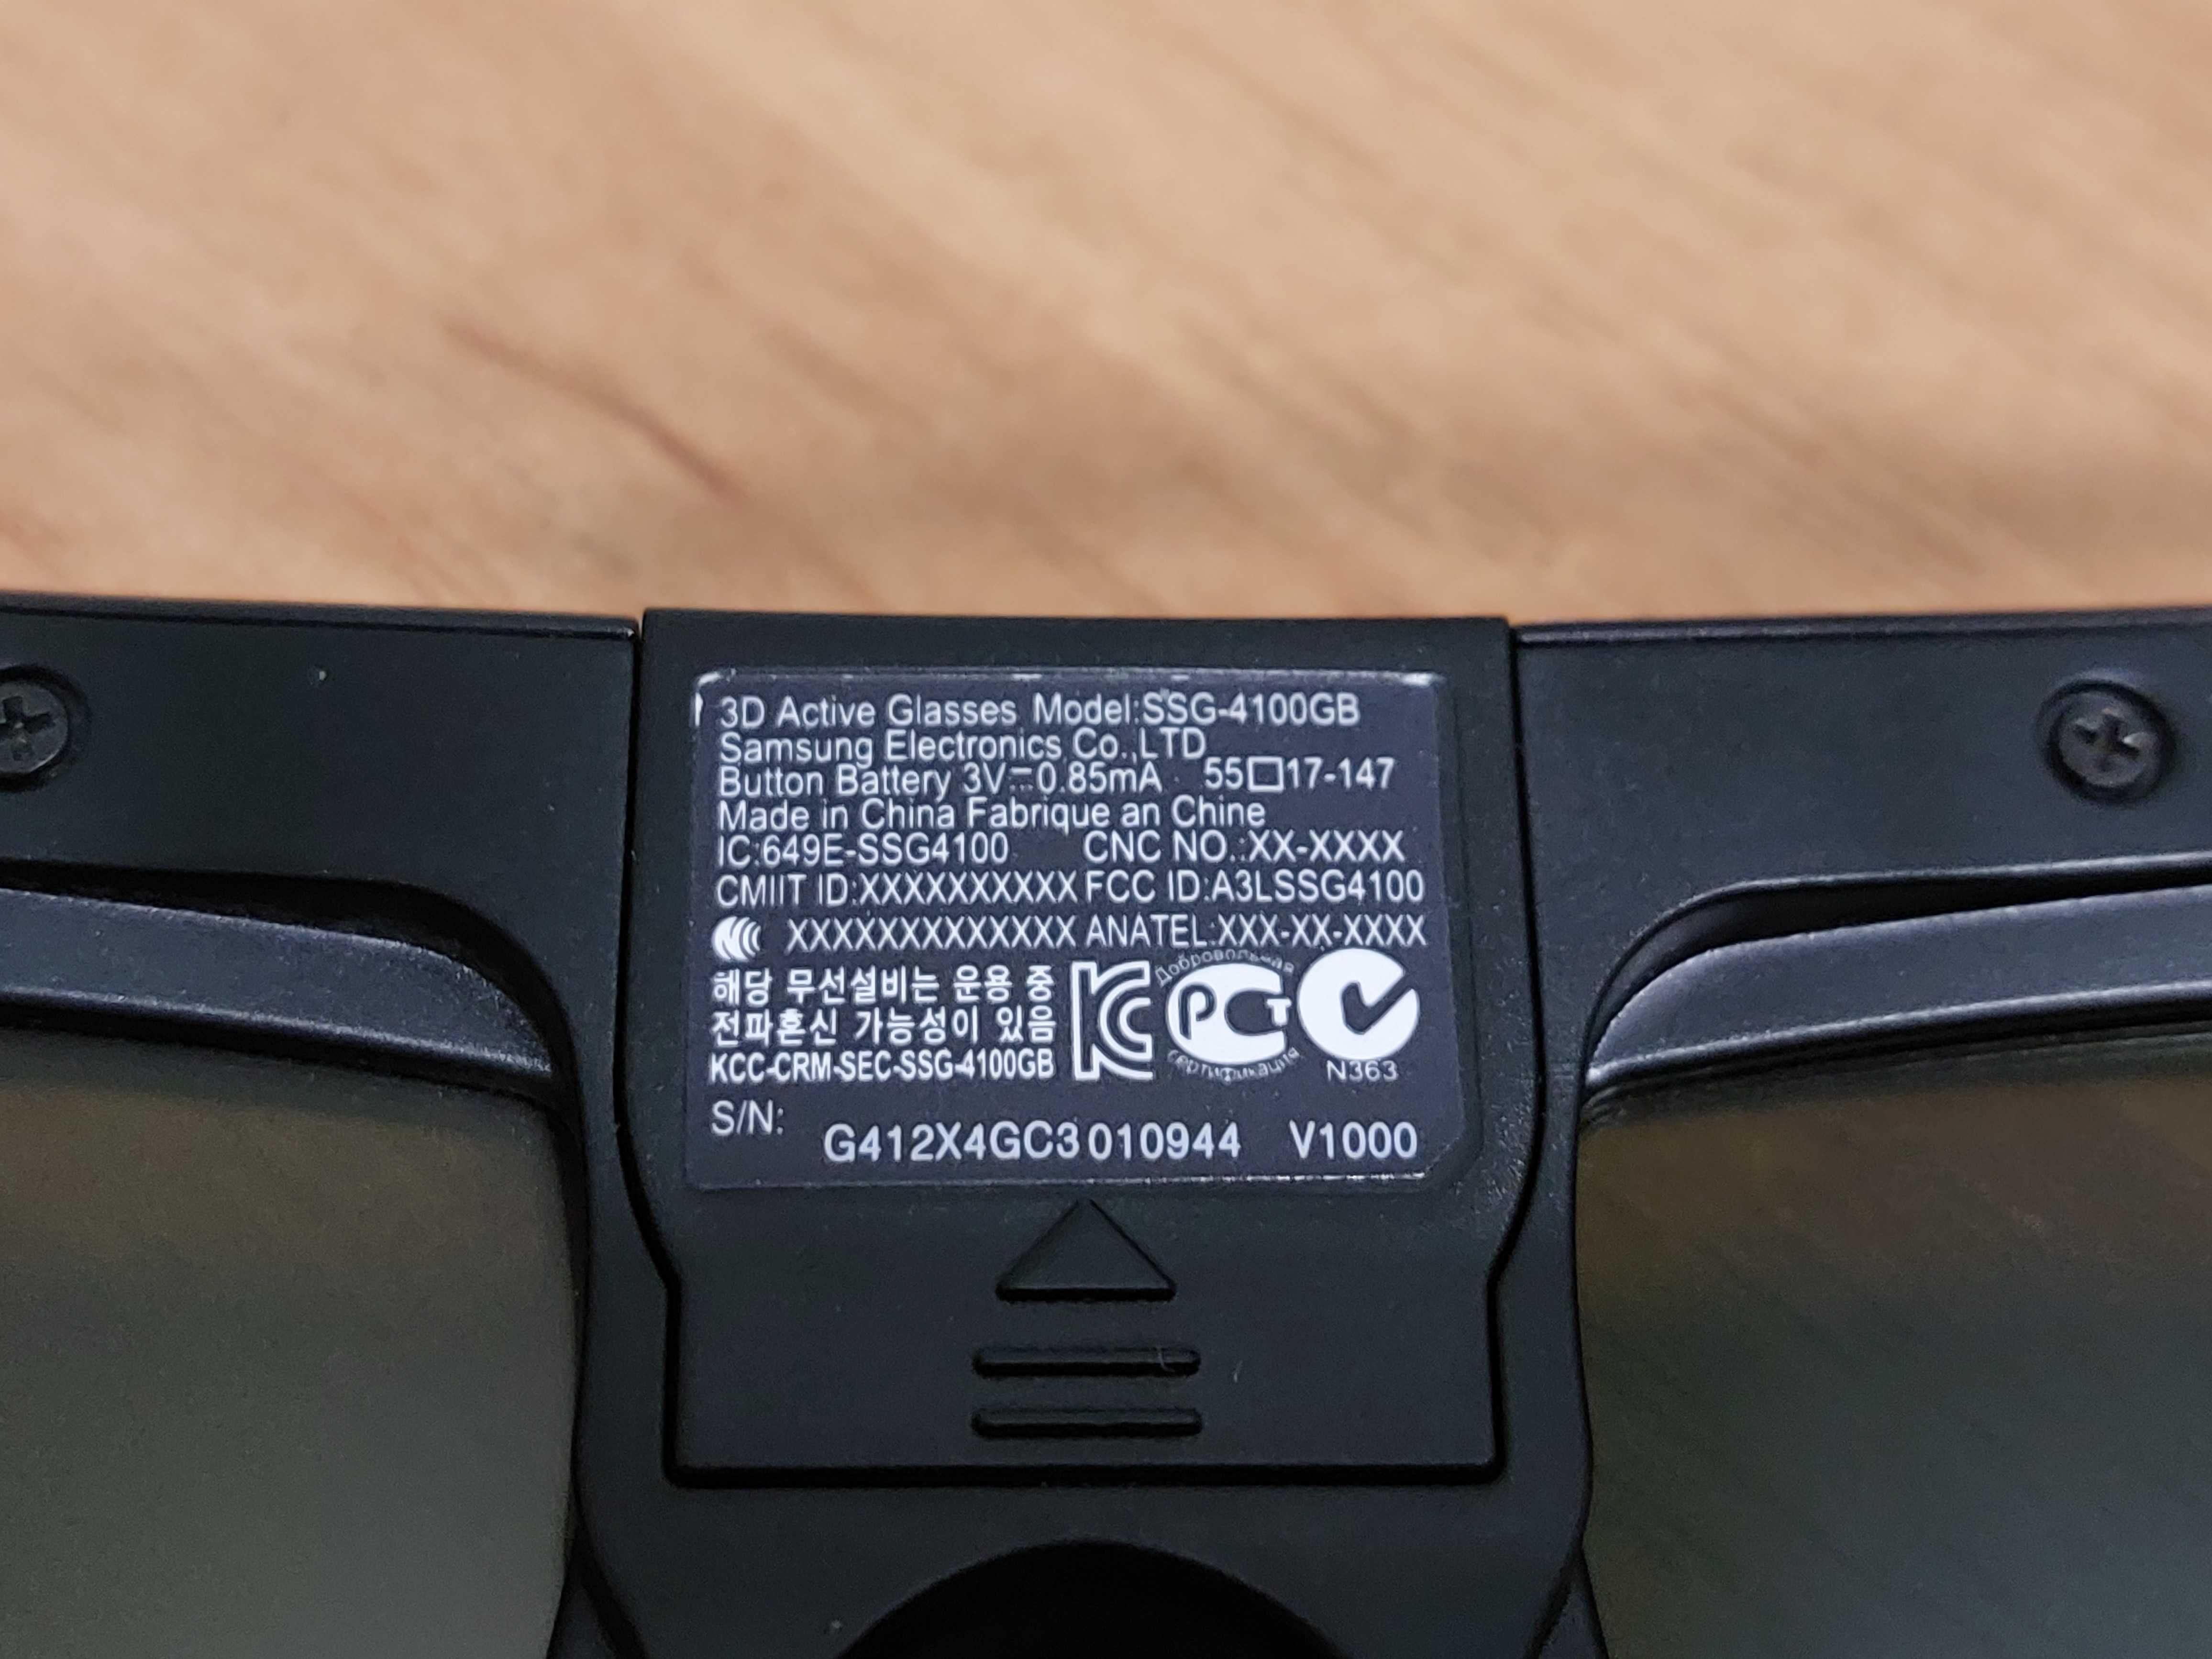 3D-окуляри з РК-затворами Samsung SSG-4100GB - комплект 2 шт